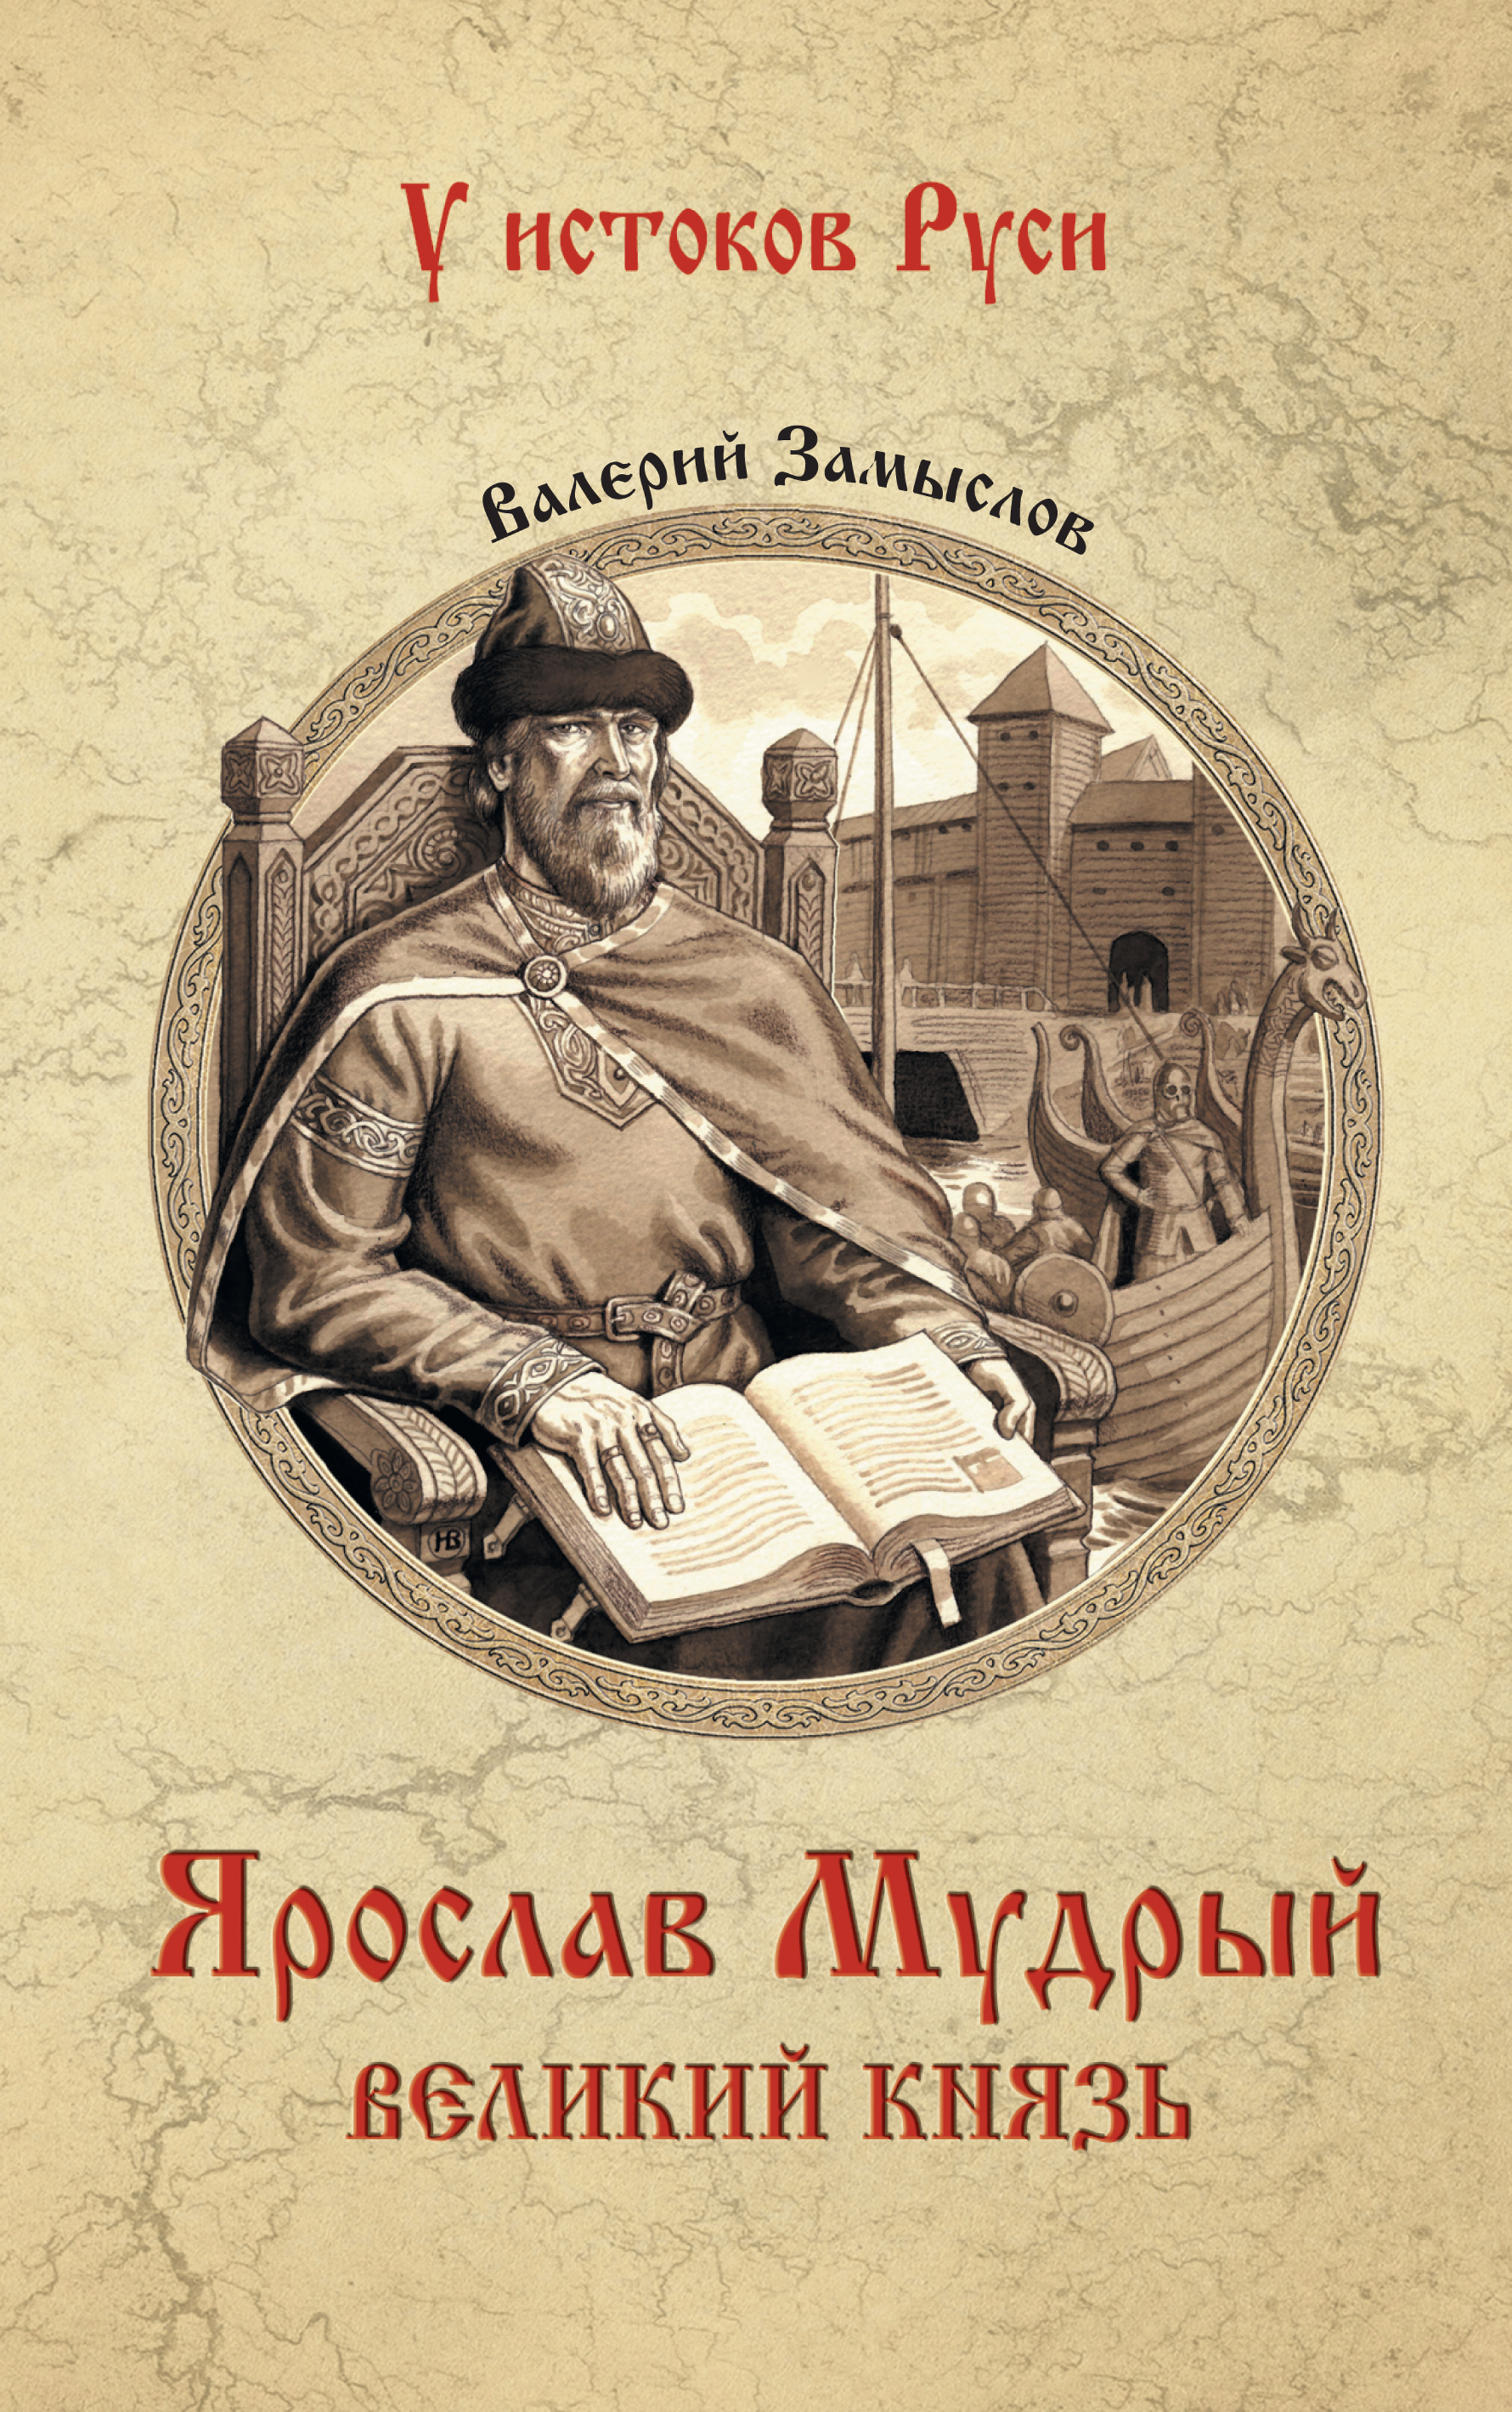 Ярослав Мудрый с книгой